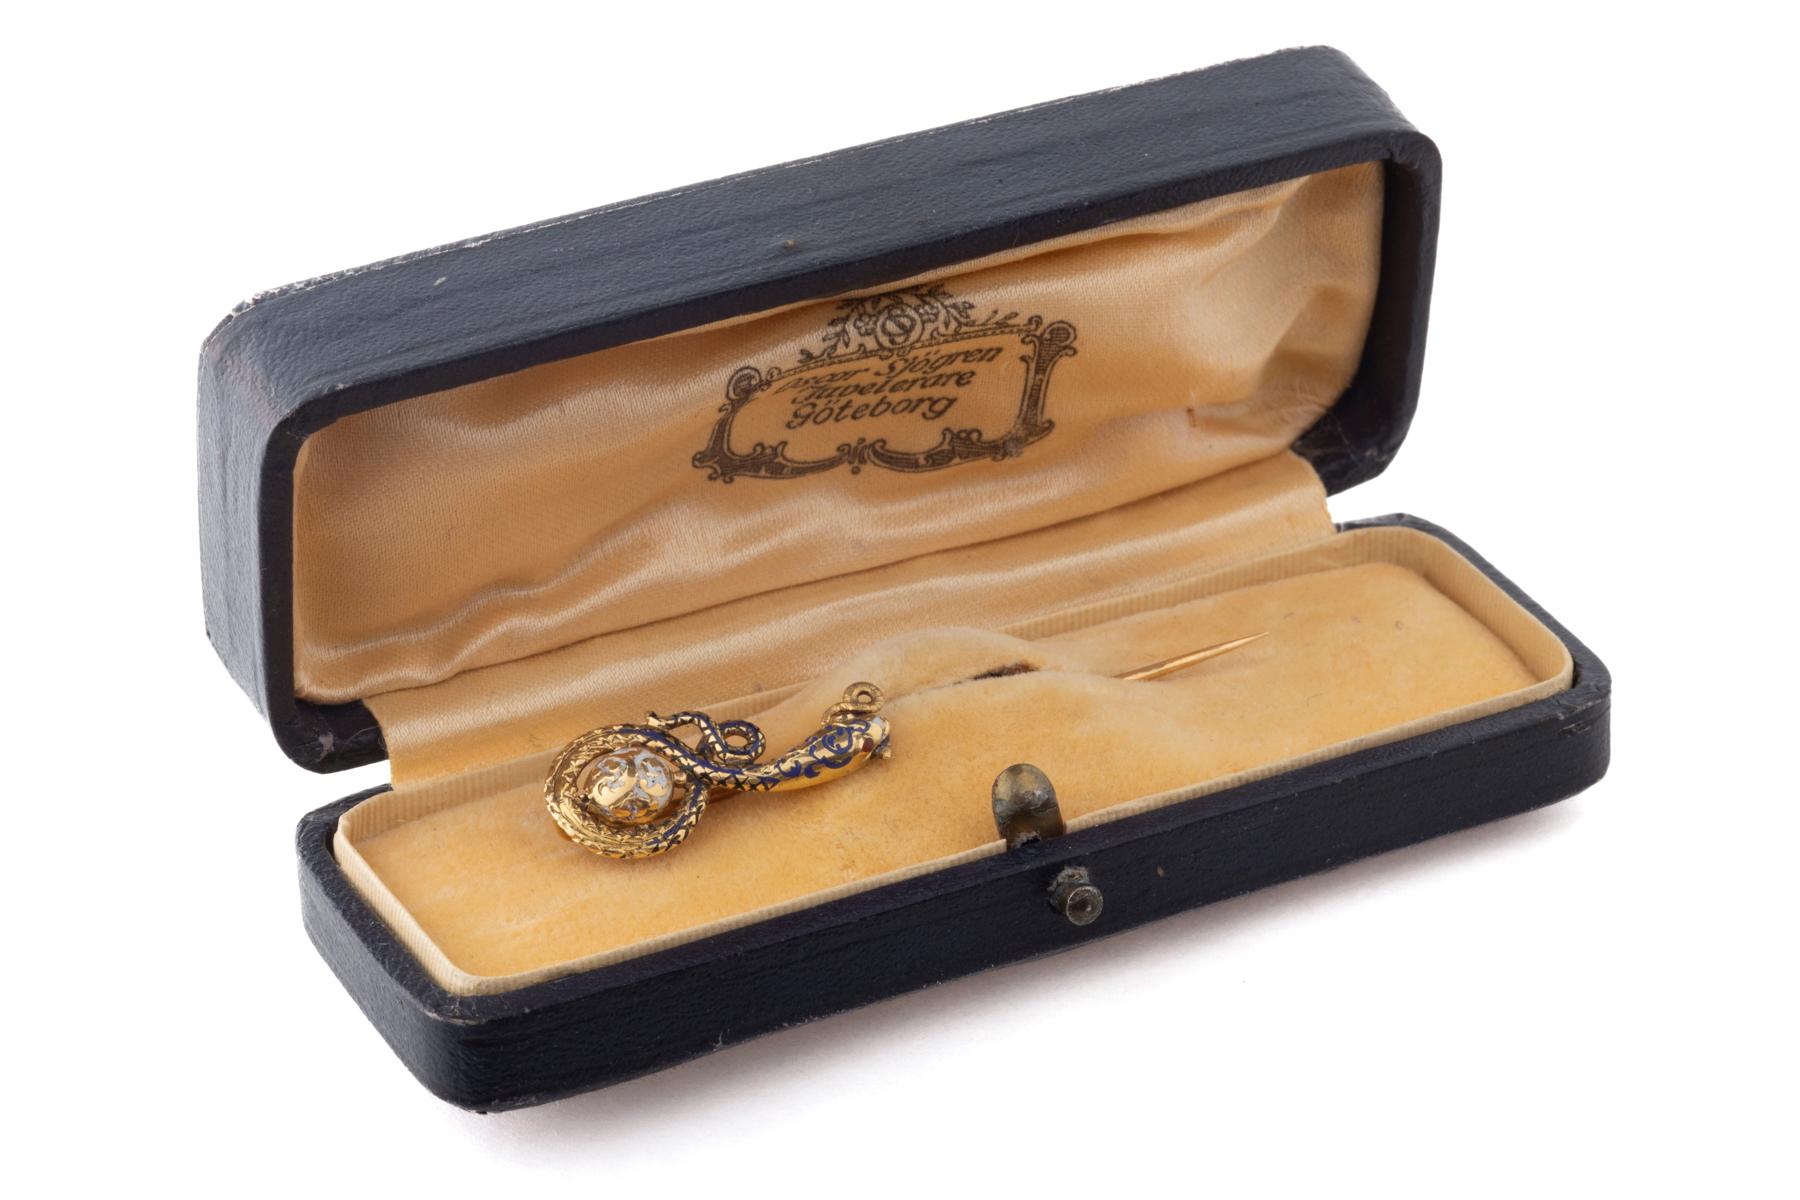 Ungewöhnliche Stickpins wie dieser sind ein Genuss. Diese frühviktorianische Schlange ist aus 18-karätigem Gold und Emaille und wird in ihrer Originalbox geliefert. Sie wurde um 1845 von Robert August Brieskorn hergestellt. Wenn sich die Schlange